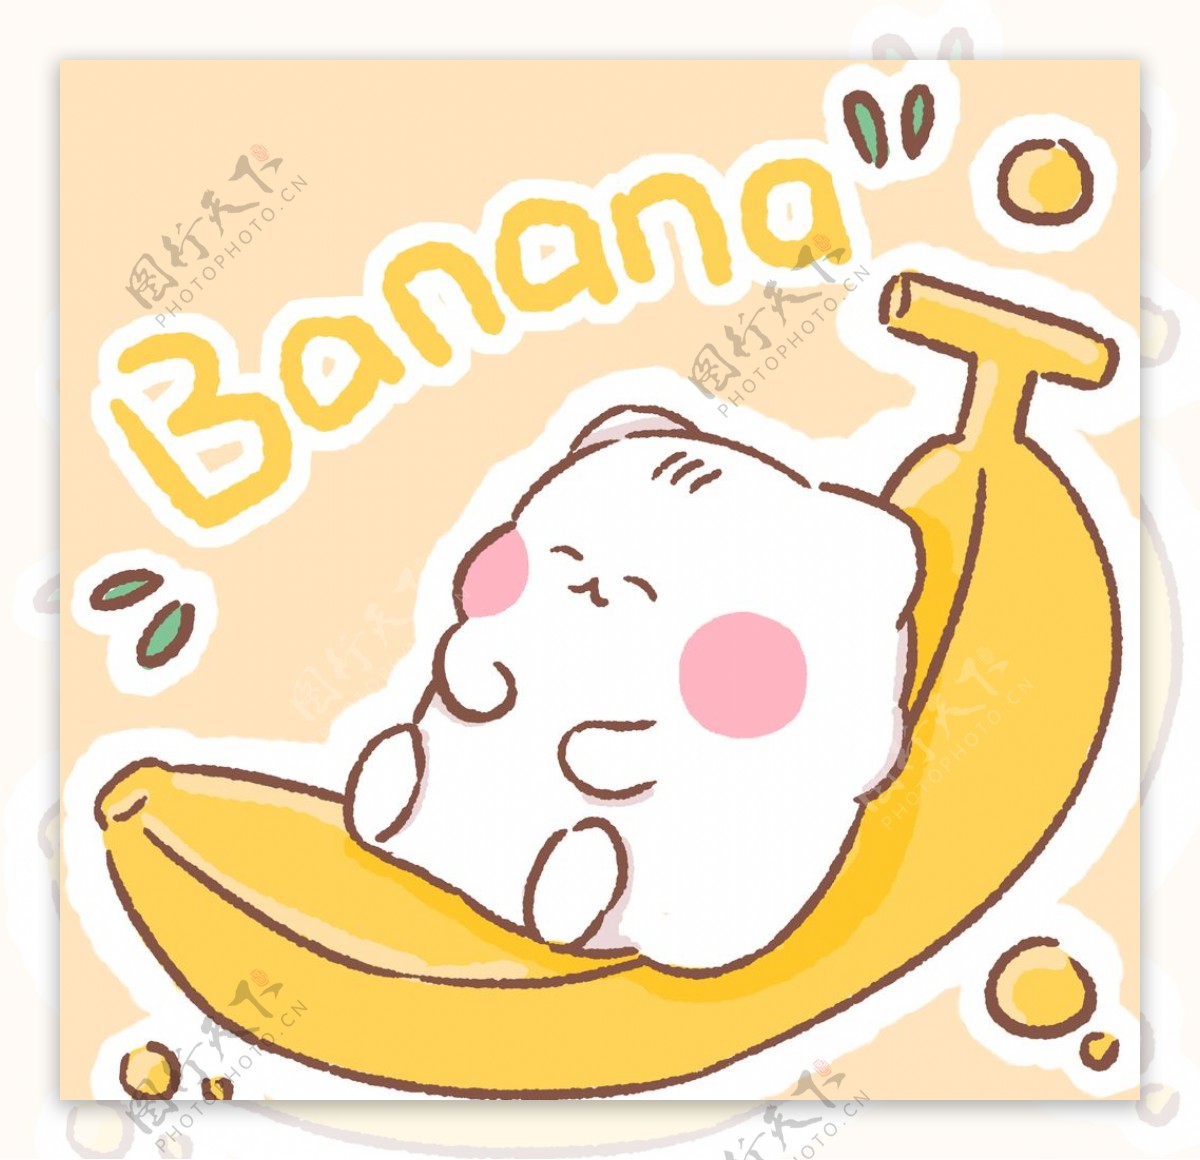 香蕉猫